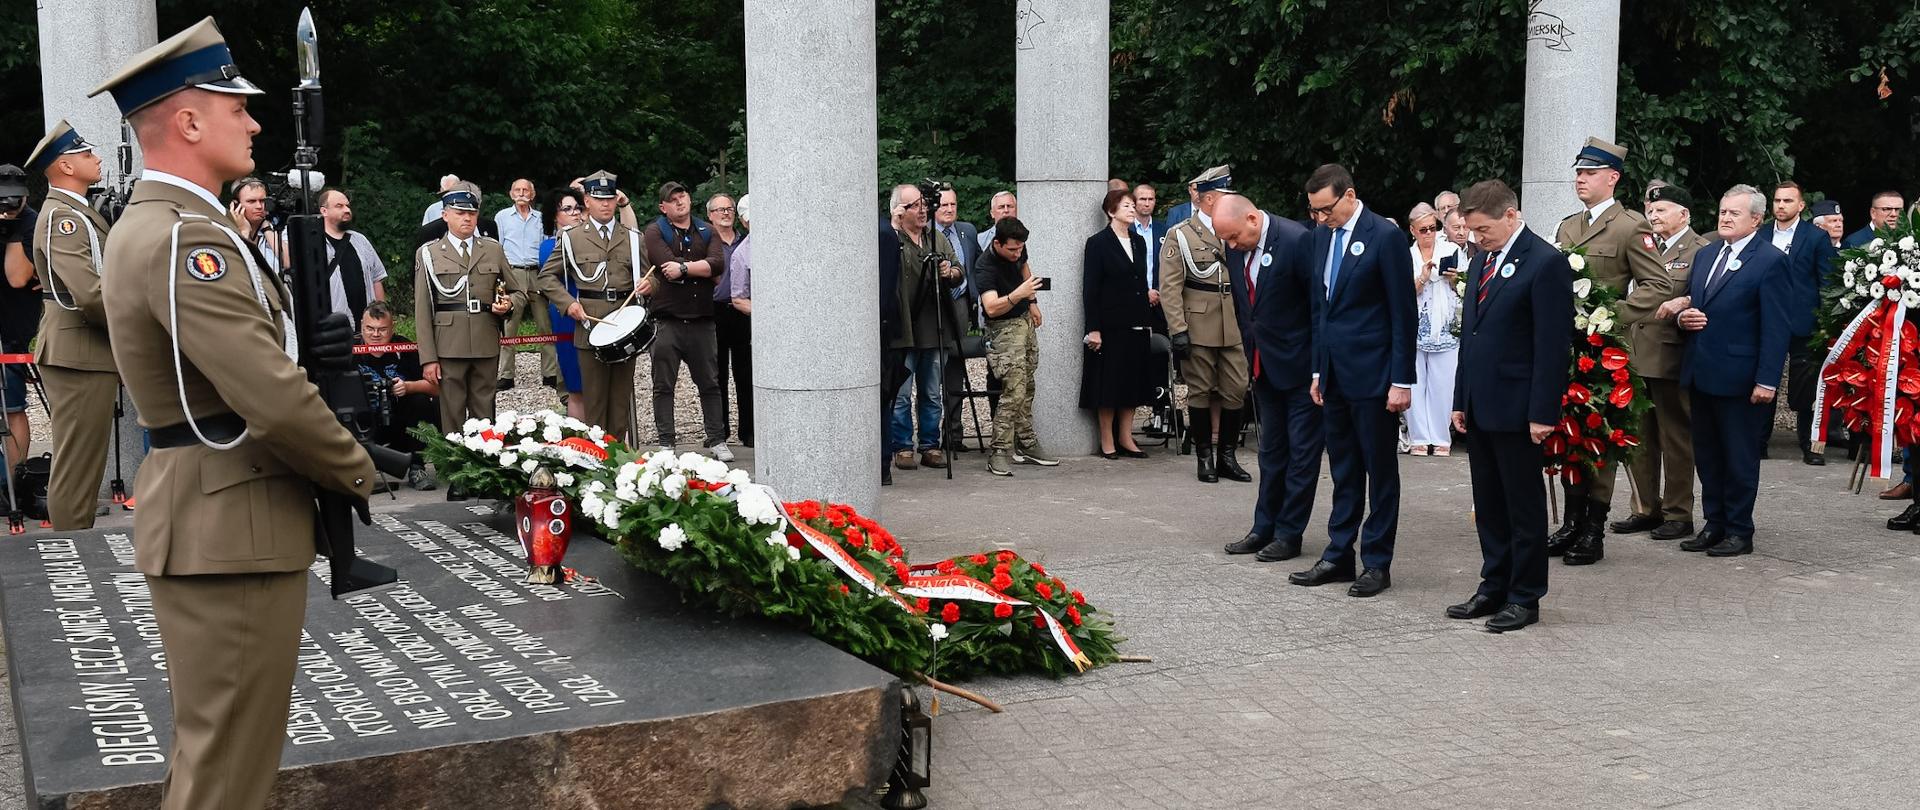 Premier Mateusz Morawiecki oraz delegacja składają wieniec podczas uroczystości przed pomnikiem Ofiar Ludobójstwa dokonanego przez nacjonalistów ukraińskich na obywatelach II Rzeczypospolitej Polskiej na terenie województw południowo-wschodnich w latach 1942-1947.